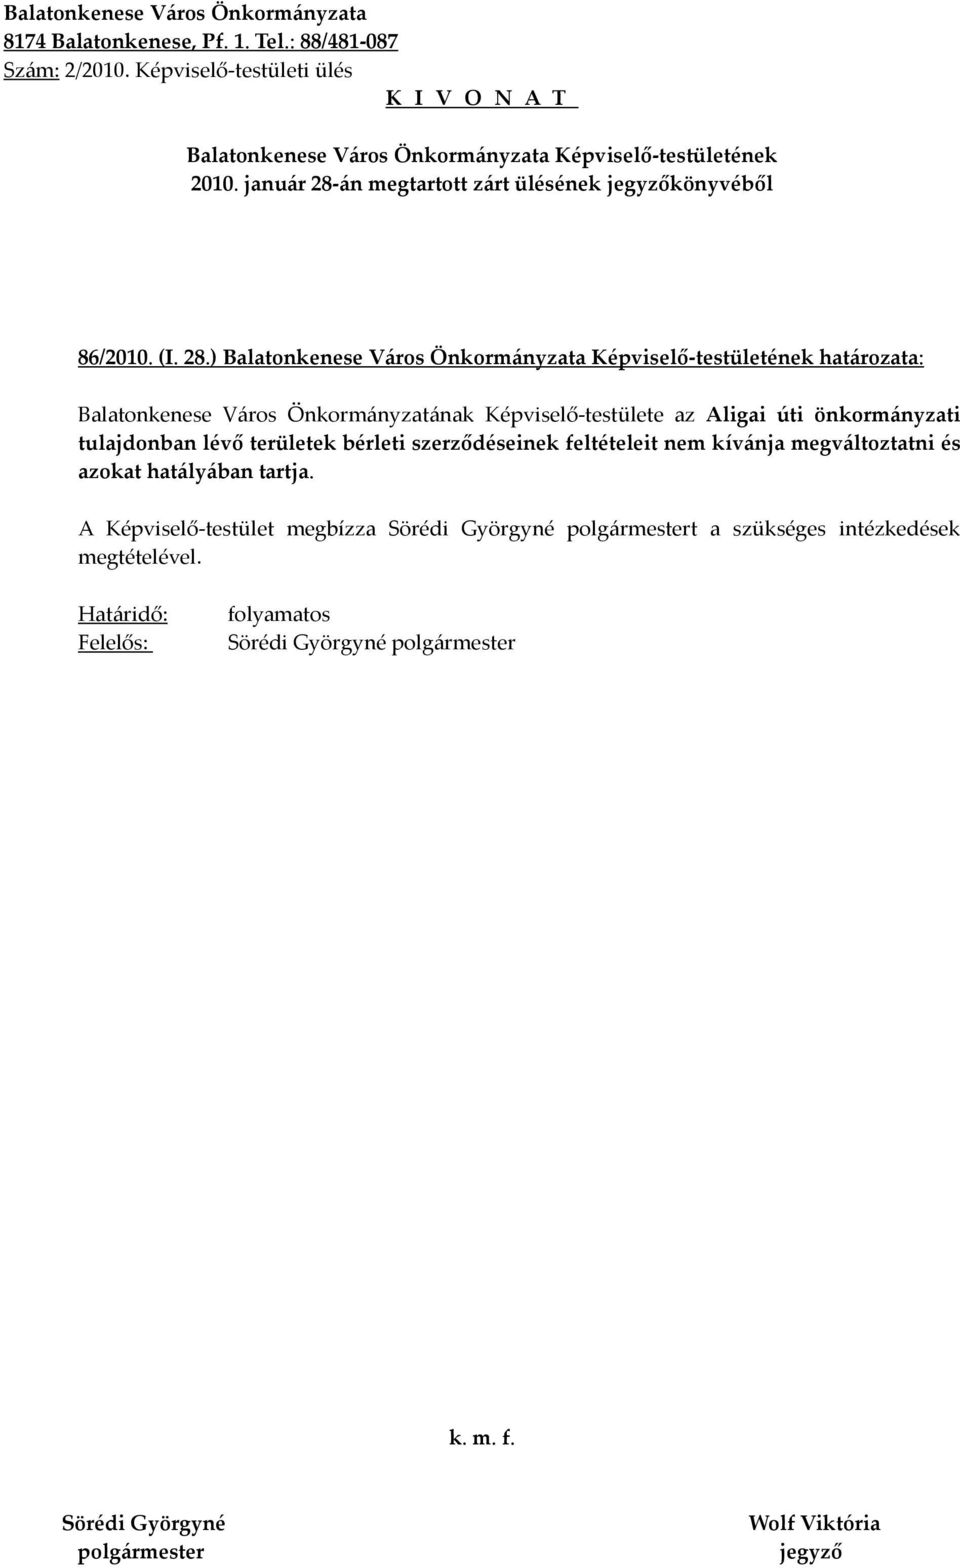 ) határozata: Balatonkenese Város Önkormányzatának Képviselő-testülete az Aligai úti